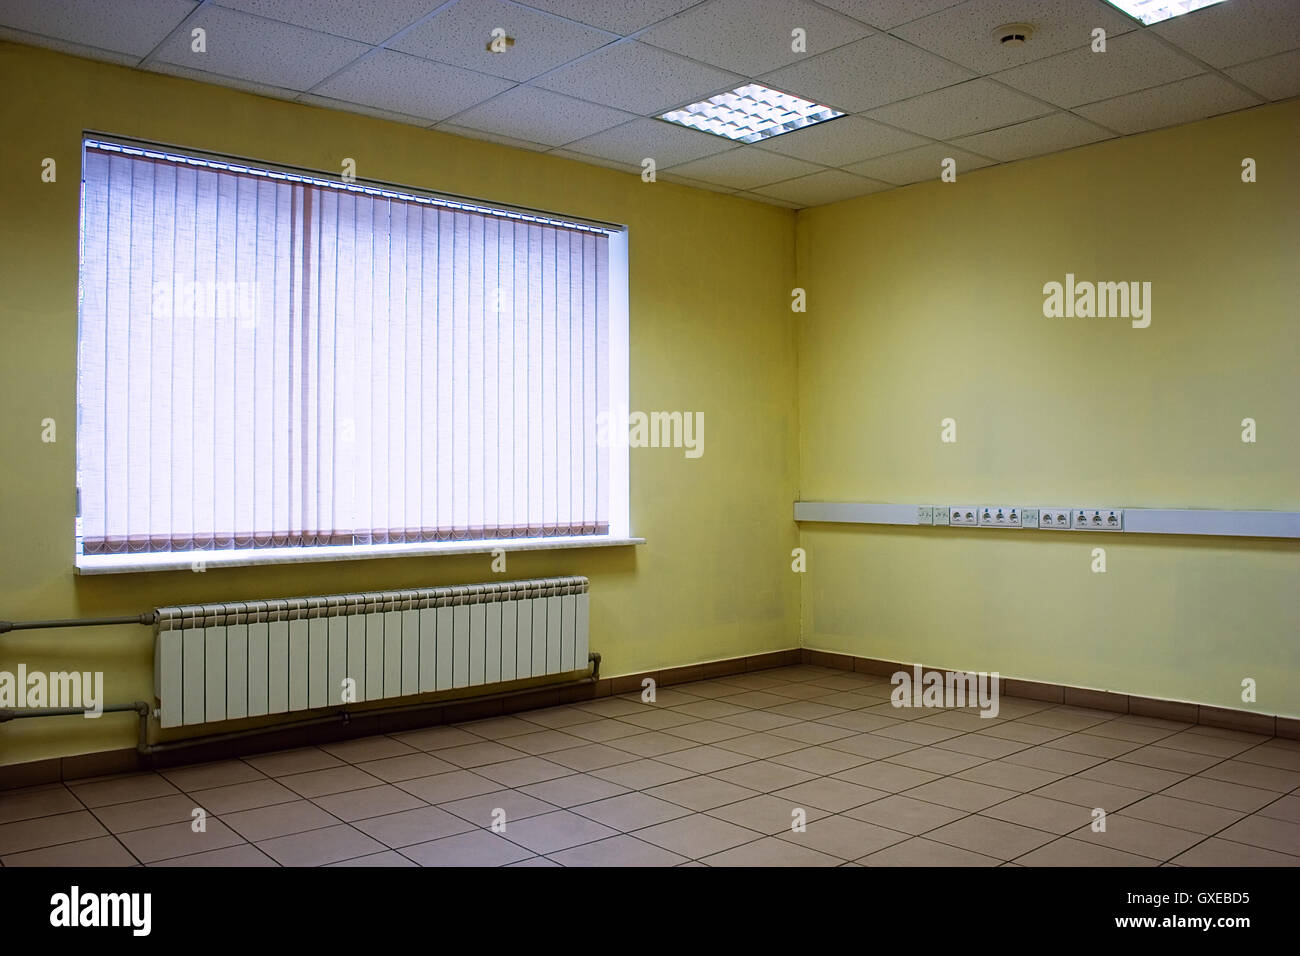 Ecke des leeren Büroraum mit Boden von Steinen, Decke, Lampen, gelbe Wände und Fenster mit Jalousie geschlossen Stockfoto